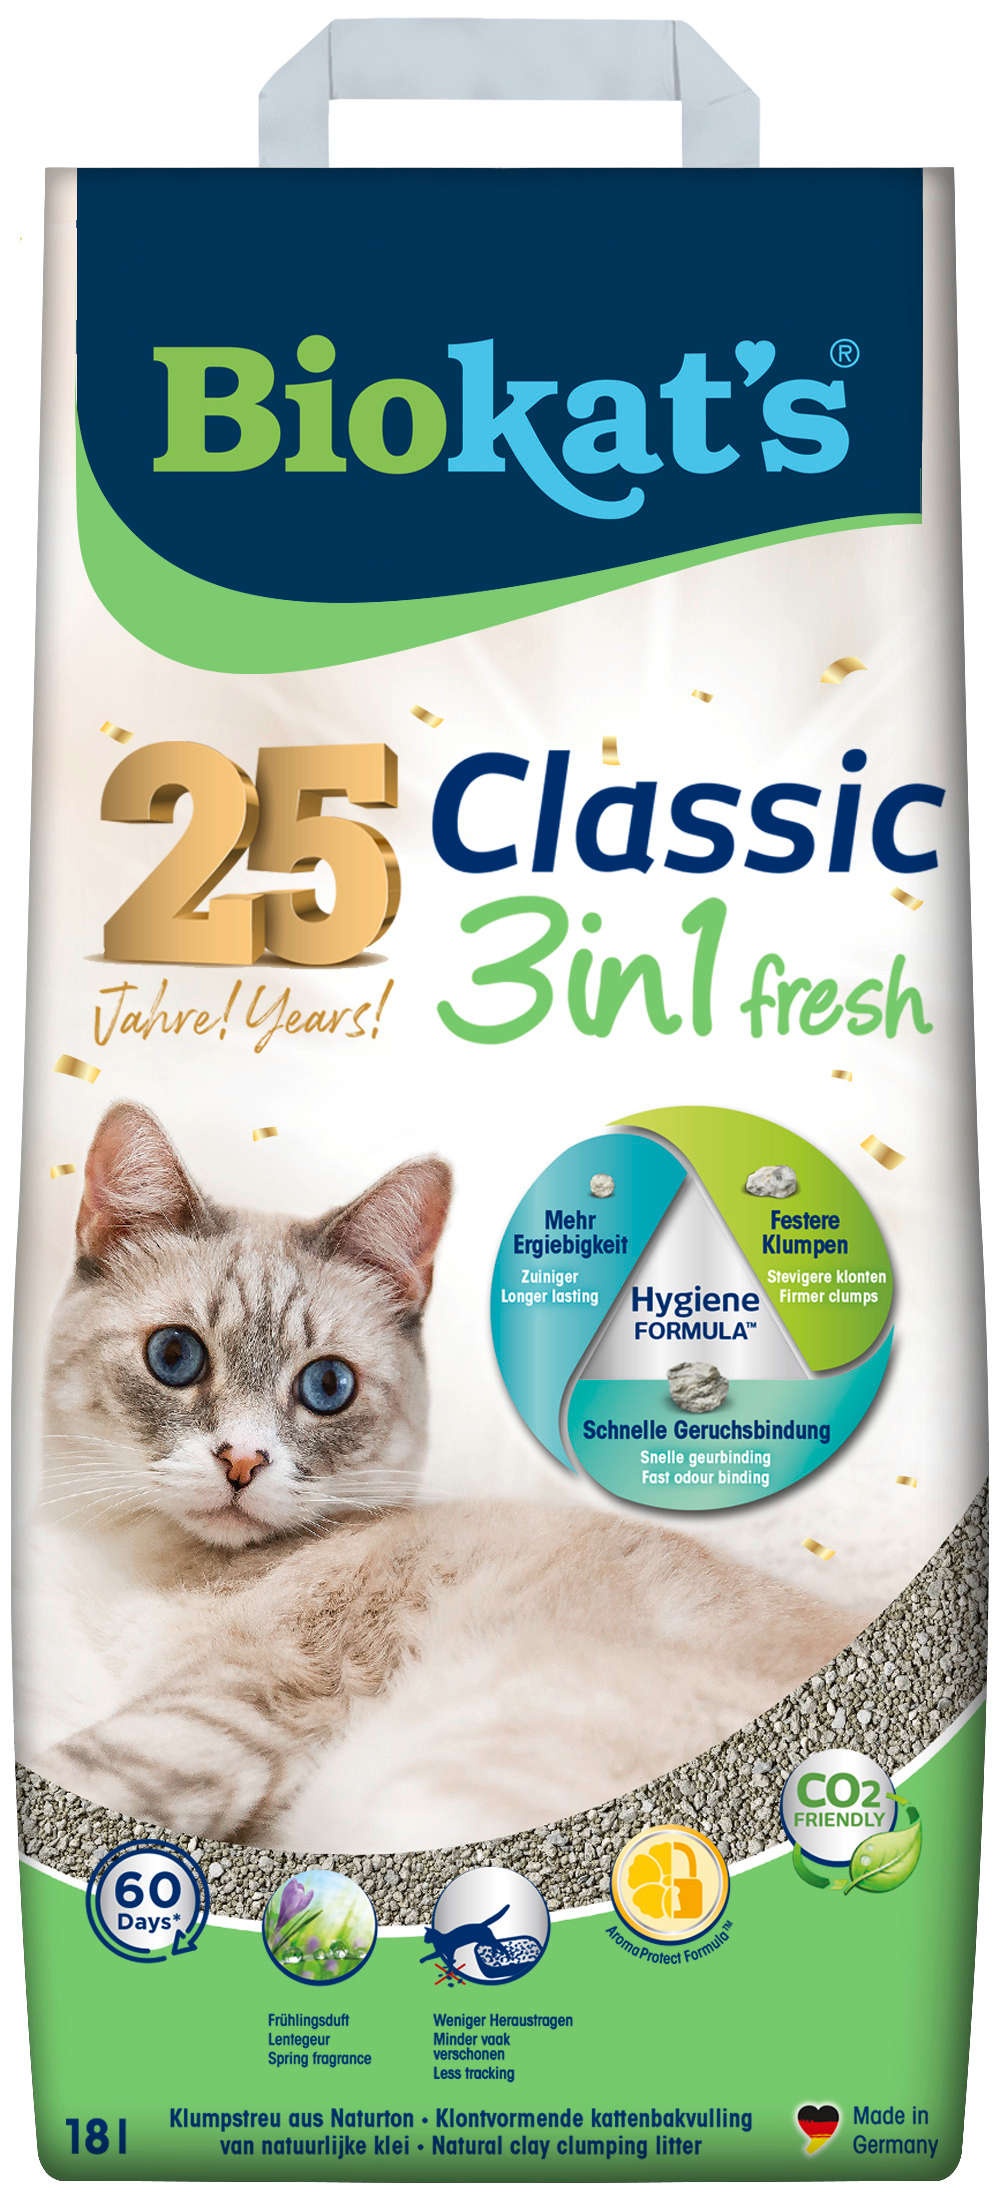 Biokat's Katzenstreu Classic 3in1 Fresh